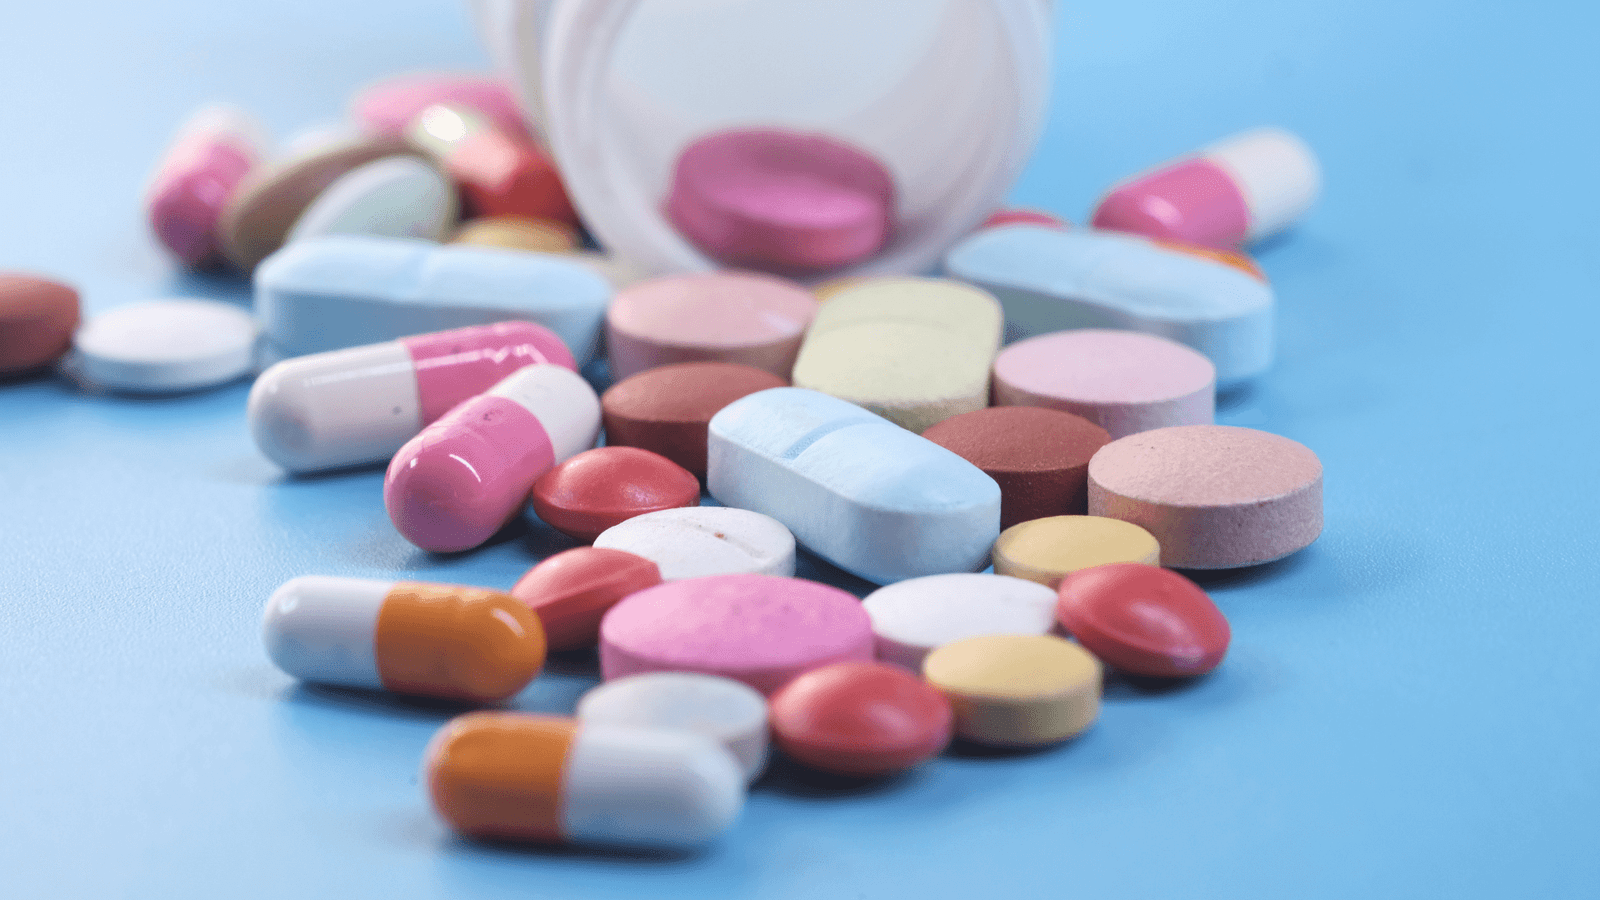 Comprimidos e pílulas espalhados numa superfície azul